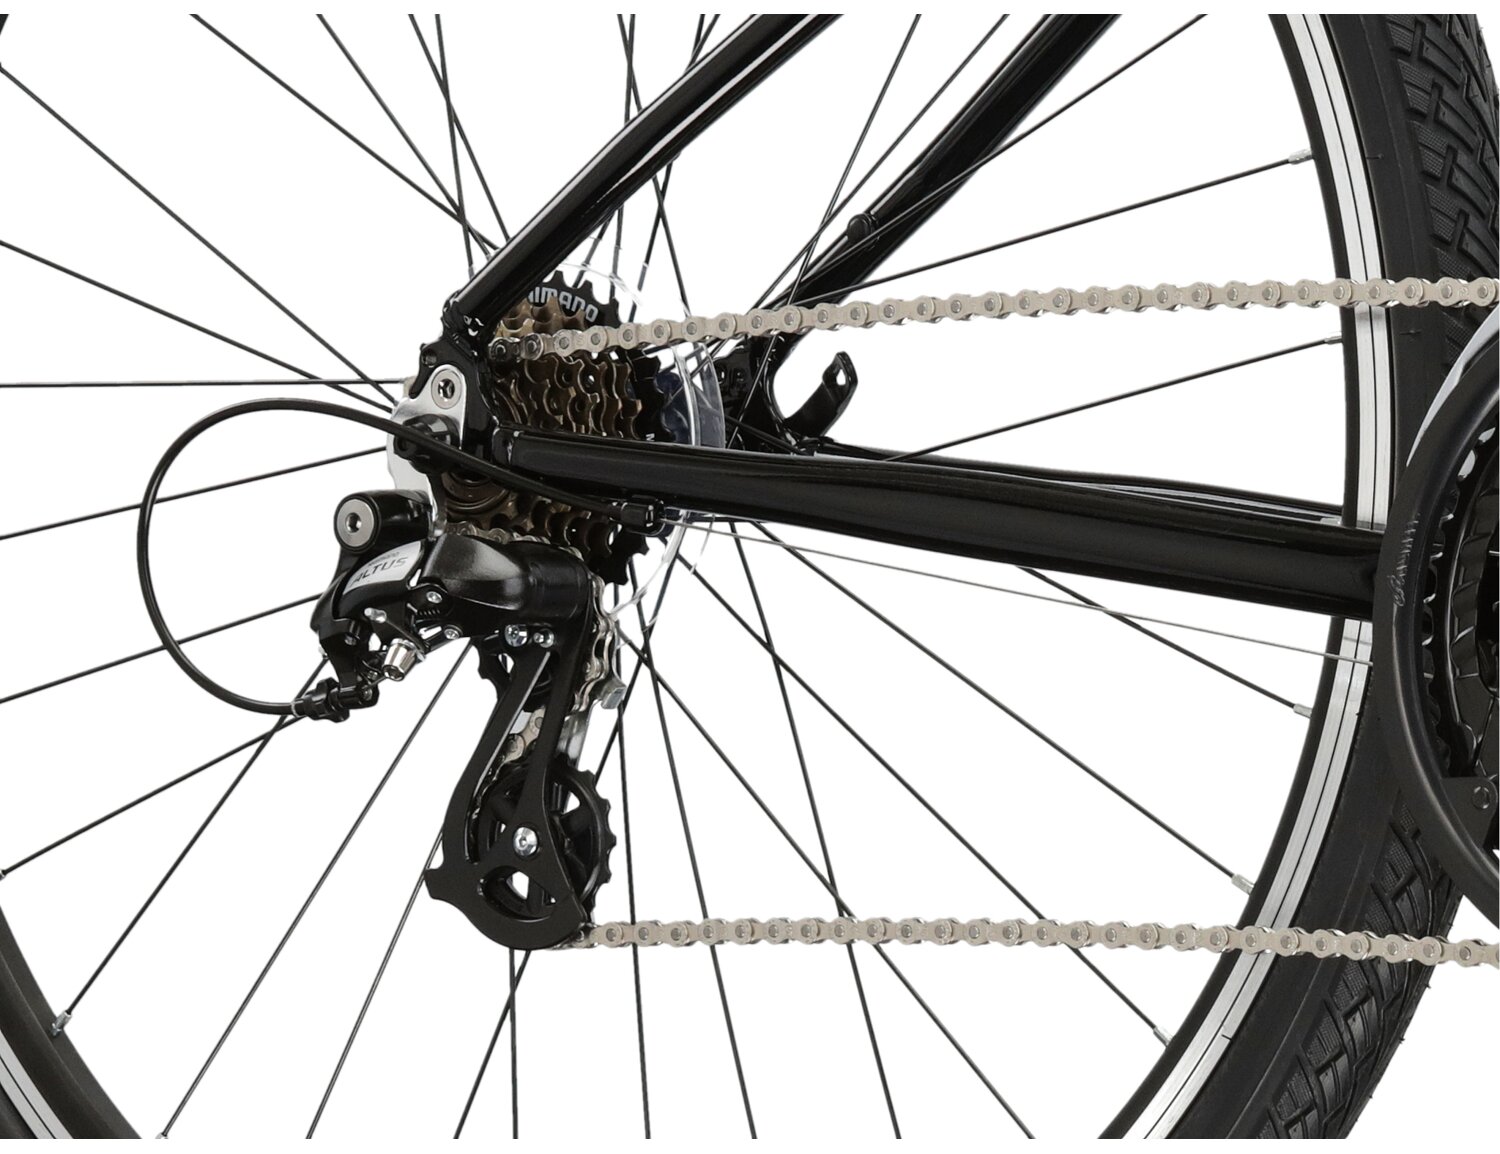  Tylna siedmiorzędowa przerzutka Shimano Altus M310 oraz hamulce v-brake w rowerze crossowym Kross Evado 2.0 damski 